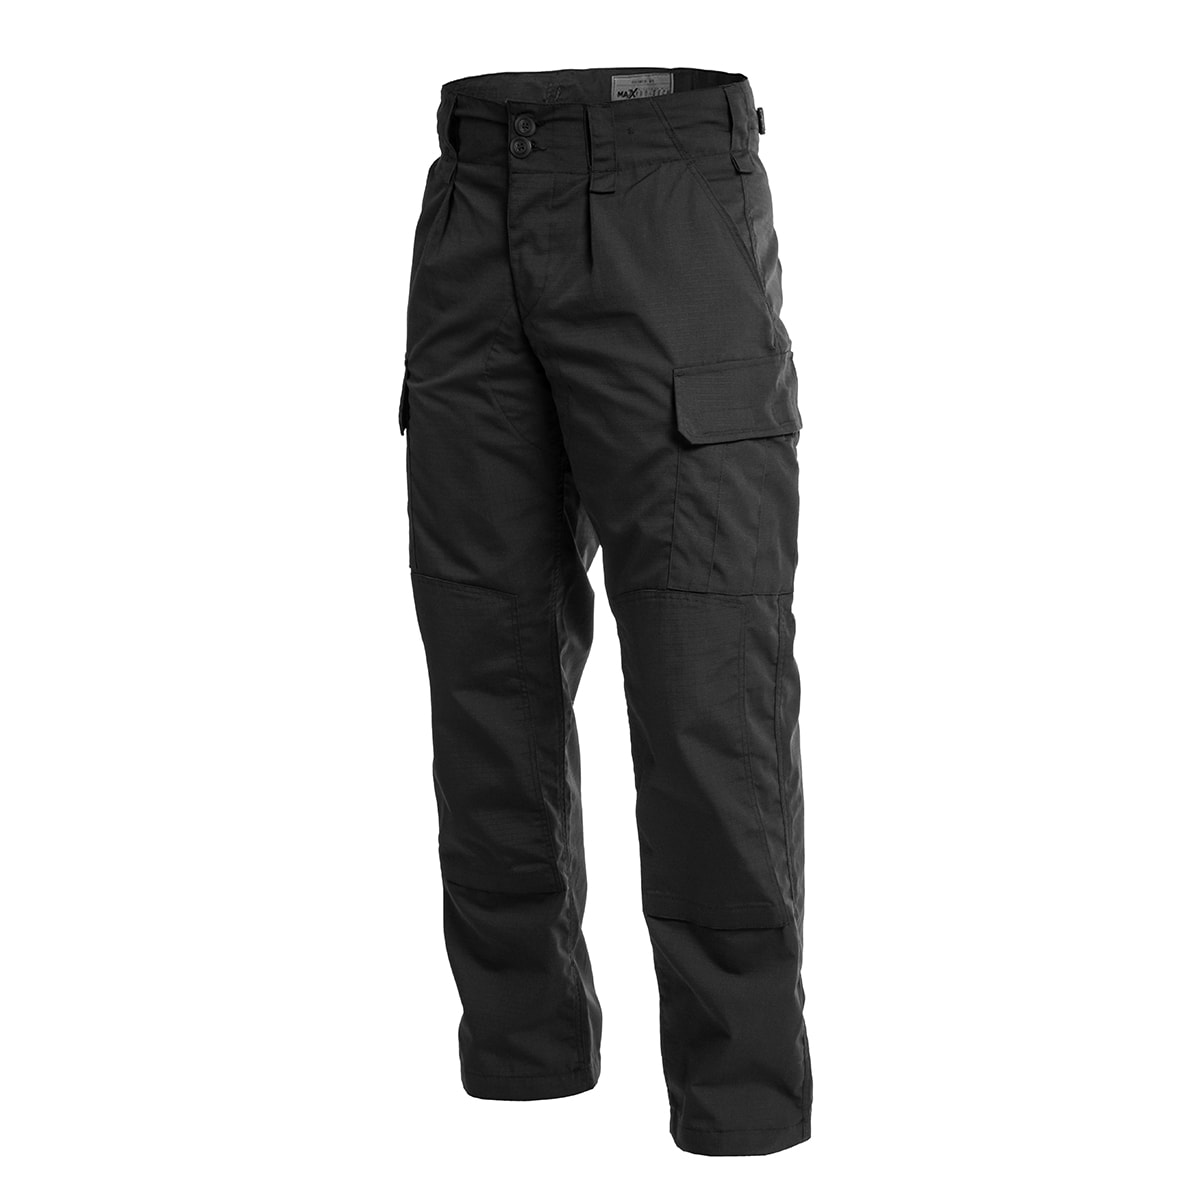 Spodnie mundurowe MaxPro-Tech WZ 2010 Rip-Stop - Black